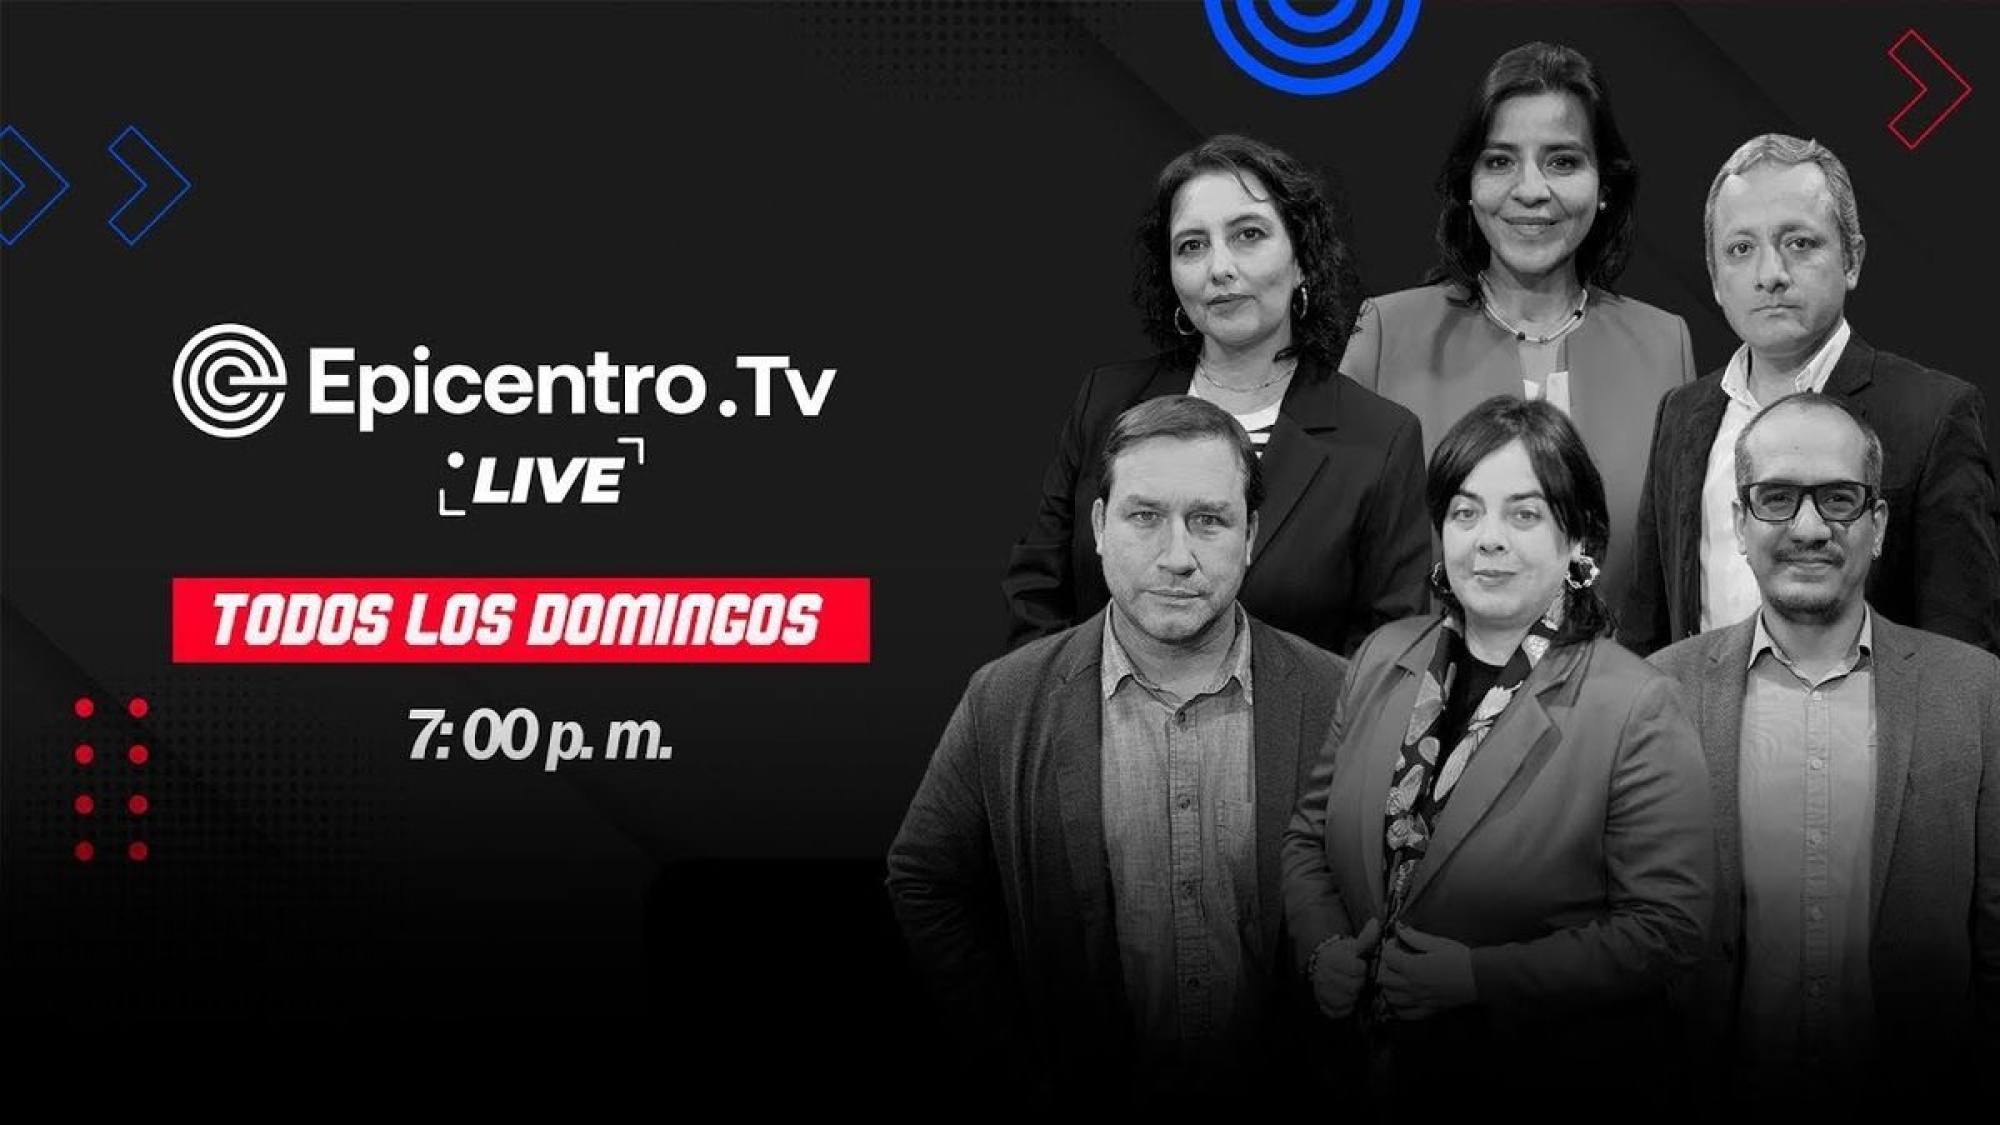 Epicentro Tv Live | Semana clave | Nuevo testimonio involucra al presidente, Epicentro TV